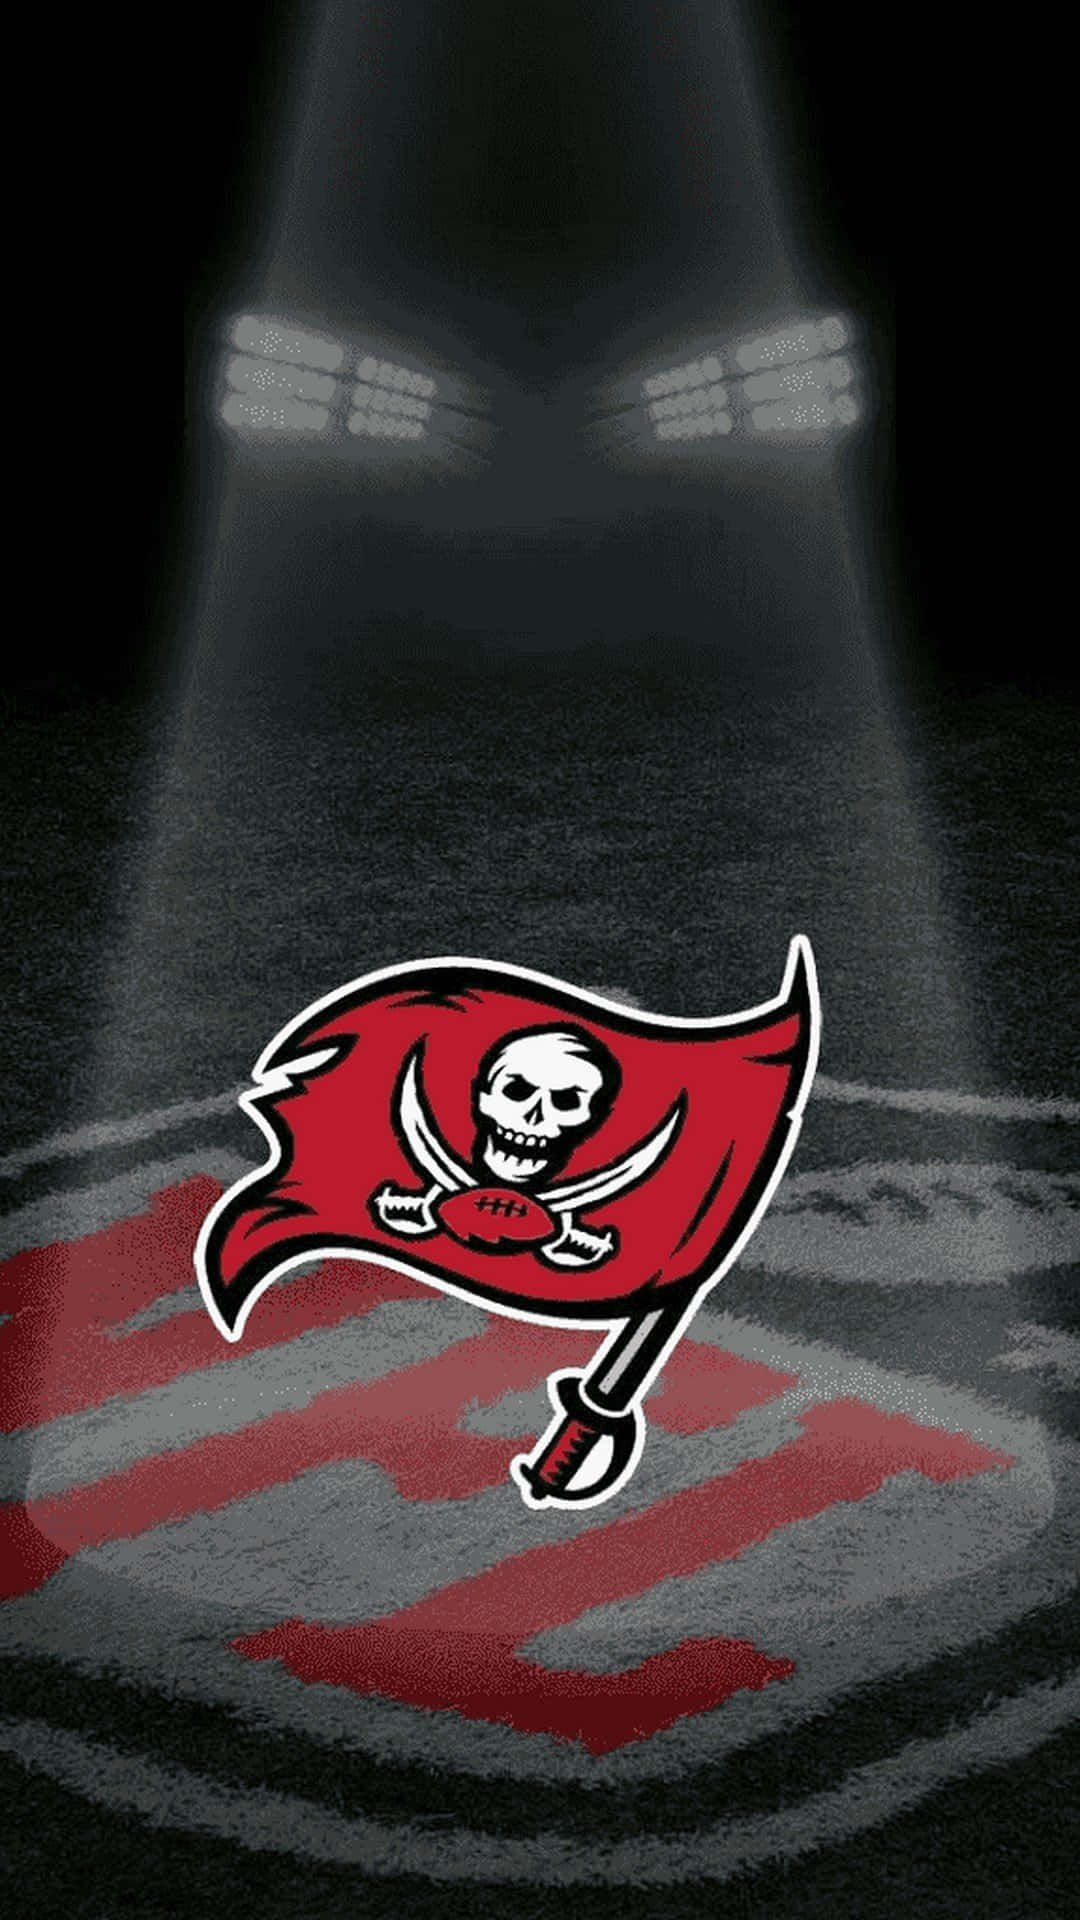 Tampa Bay Buccaneers iPhone Logo Spotlight-tapet: Fremhæv din støtte til Buccaneers med dette spotlight-tapet af deres ikoniske logo. Wallpaper